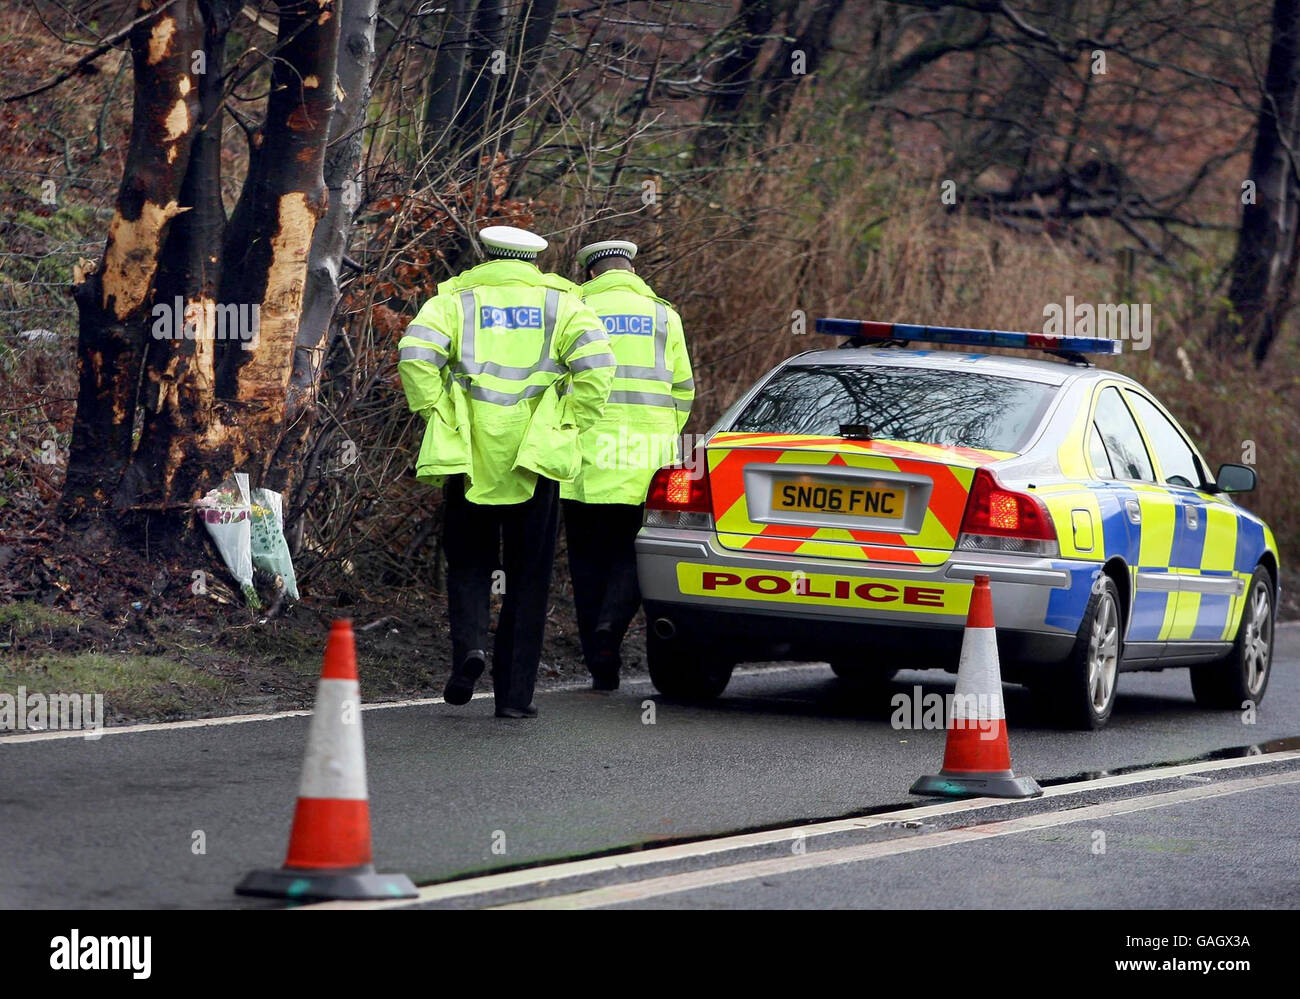 La police enquête sur la zone où un pompier s'est écrasé, tuant un pompier et blessant une seconde sur une route près de Tillicemilen, dans le Clackmannanshire, en Écosse. Banque D'Images